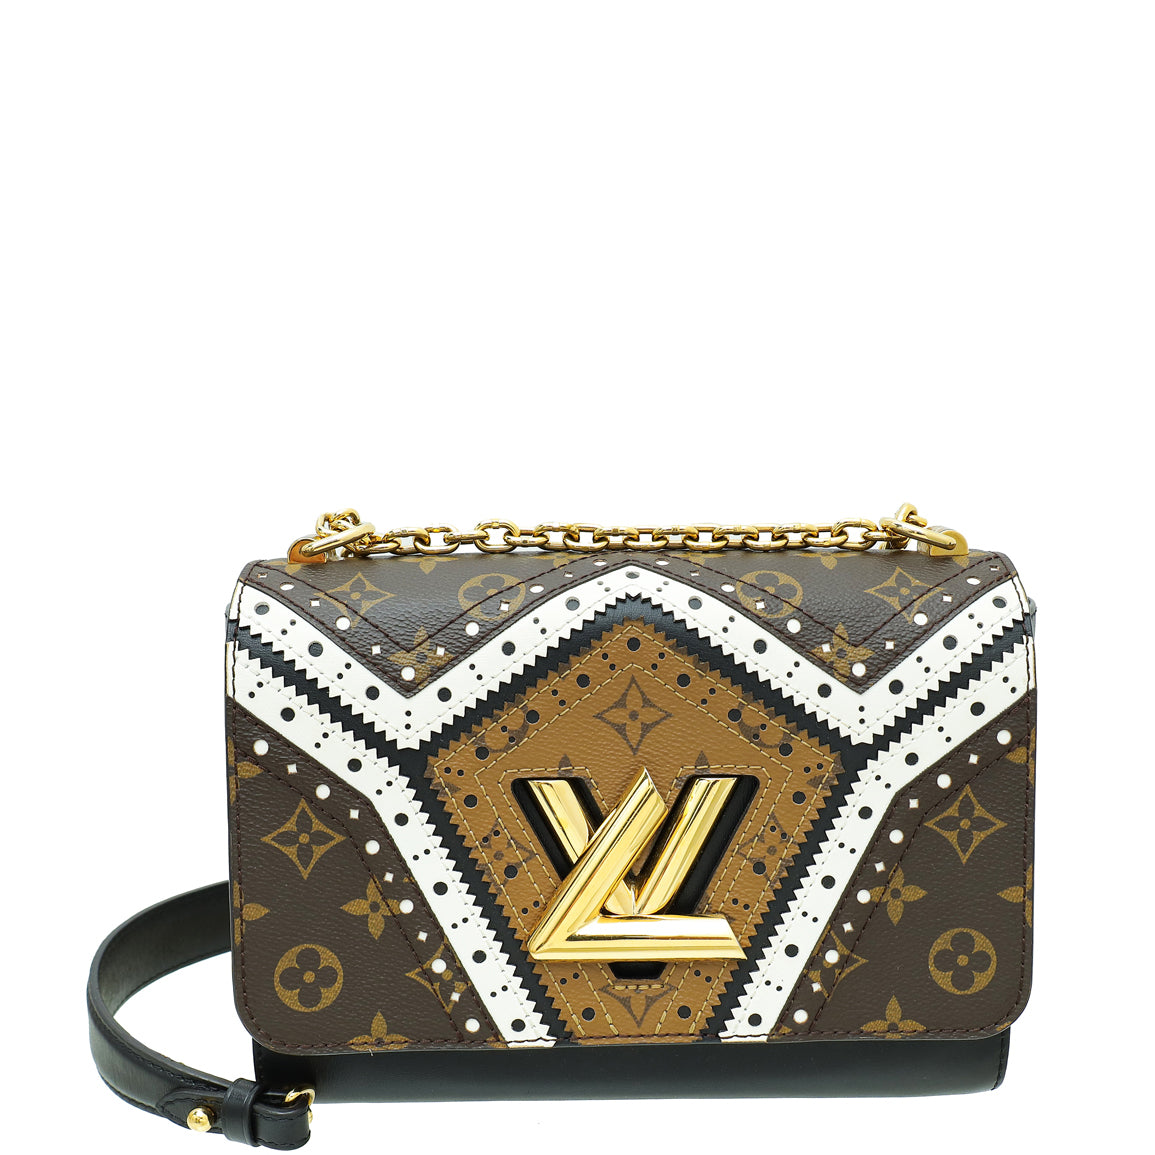 Louis Vuitton Bicolor Veau Satin Monogram Twist MM Bag